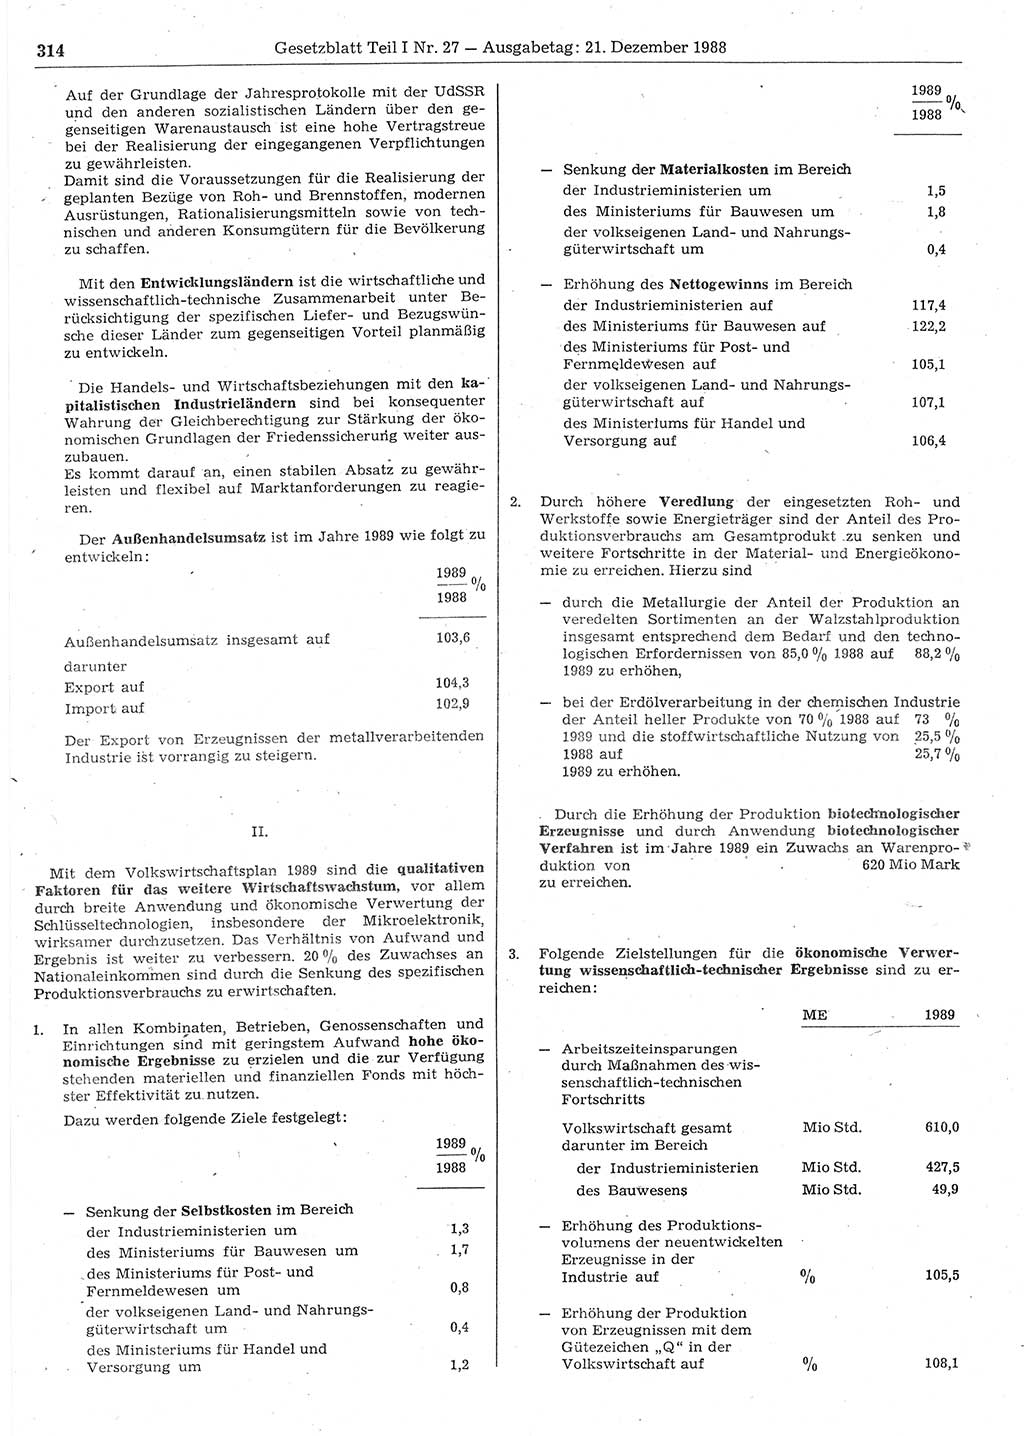 Gesetzblatt (GBl.) der Deutschen Demokratischen Republik (DDR) Teil Ⅰ 1988, Seite 314 (GBl. DDR Ⅰ 1988, S. 314)